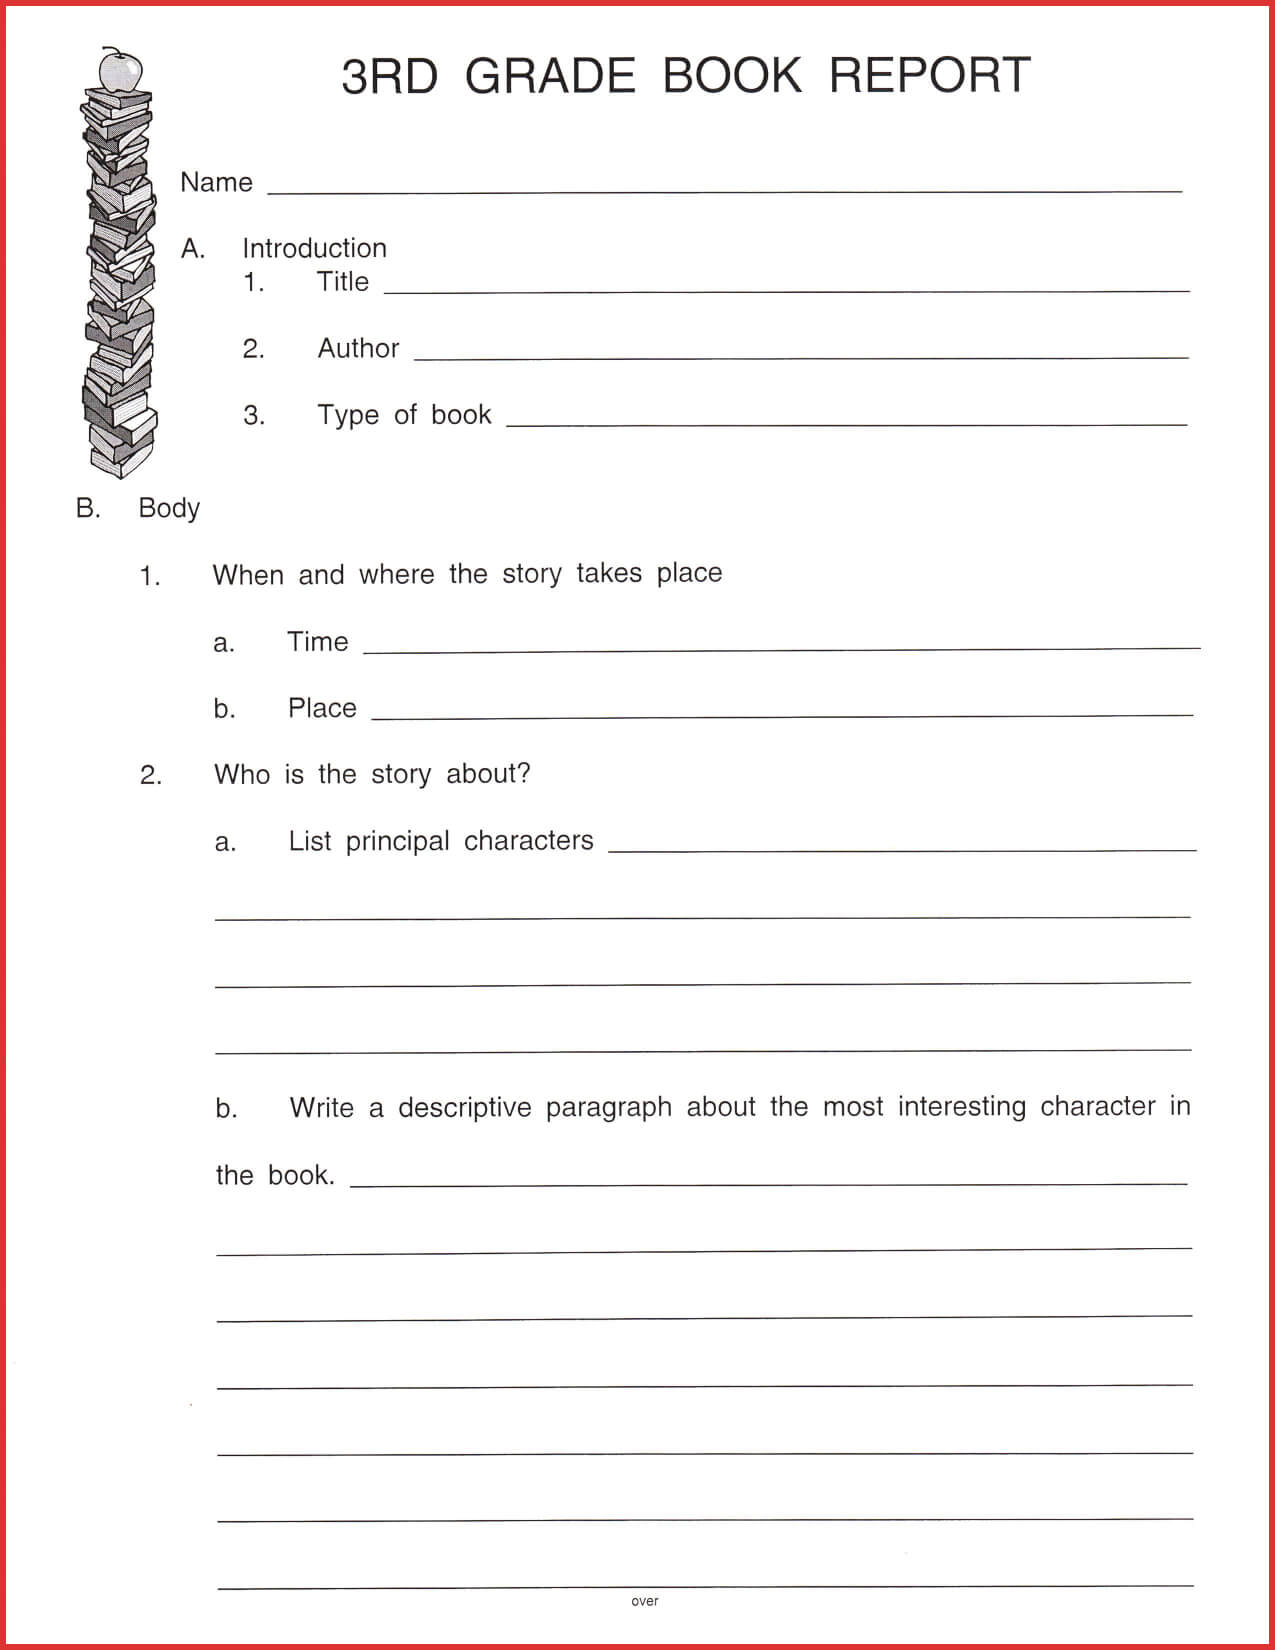 Fresh 3Rd Grade Book Report Template | Job Latter For 1St Inside 1St Grade Book Report Template